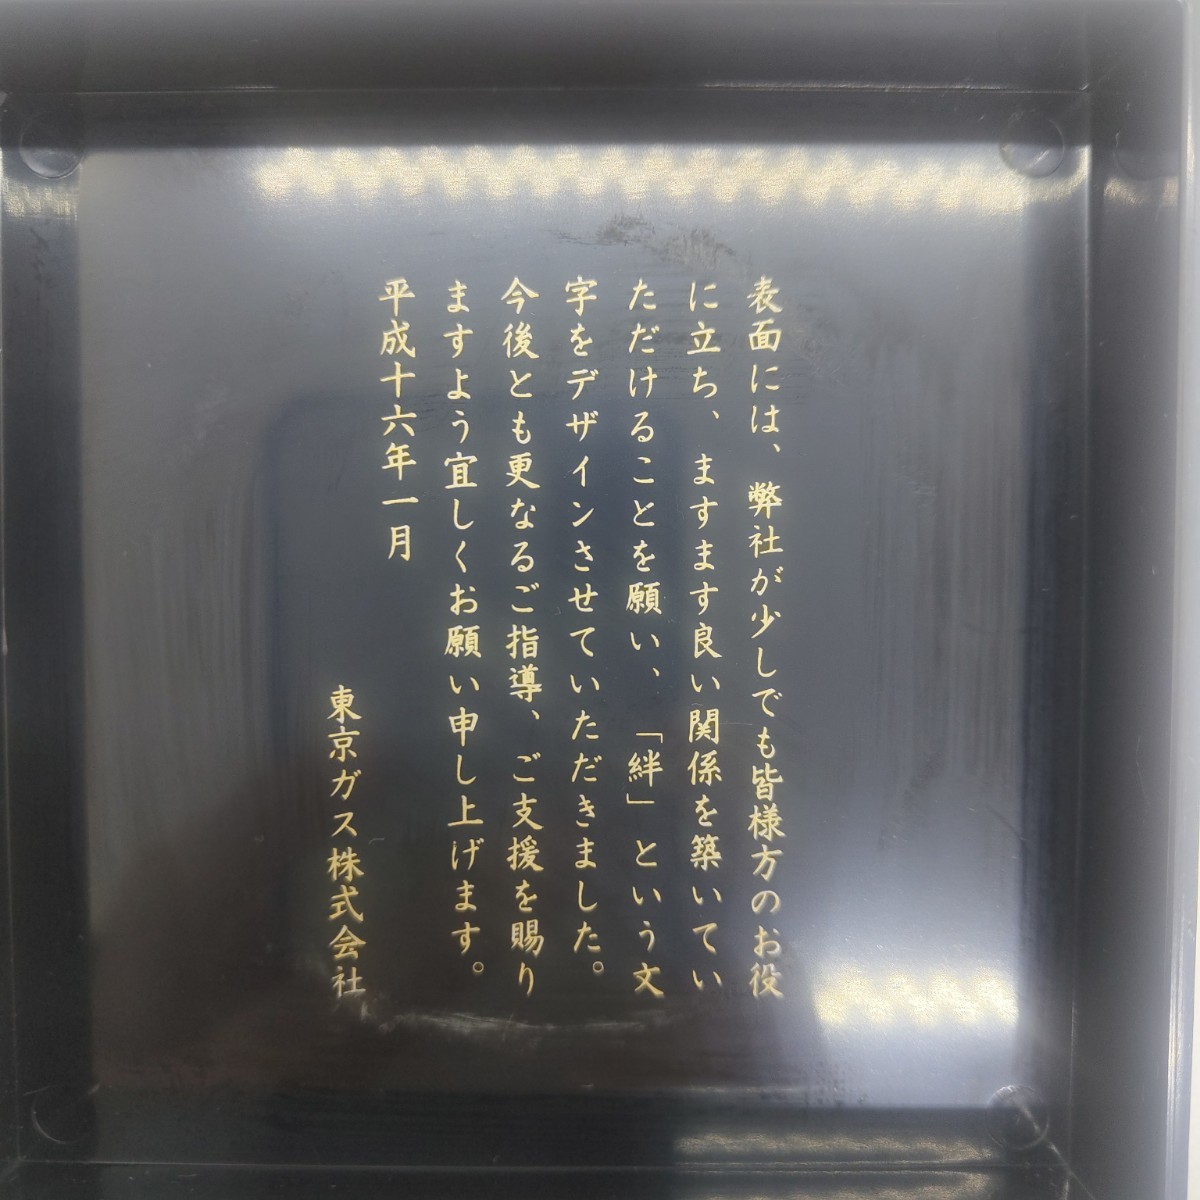 東京ガス 拡大鏡 ルーペ ノベルティグッズ 平成16年1月_画像4